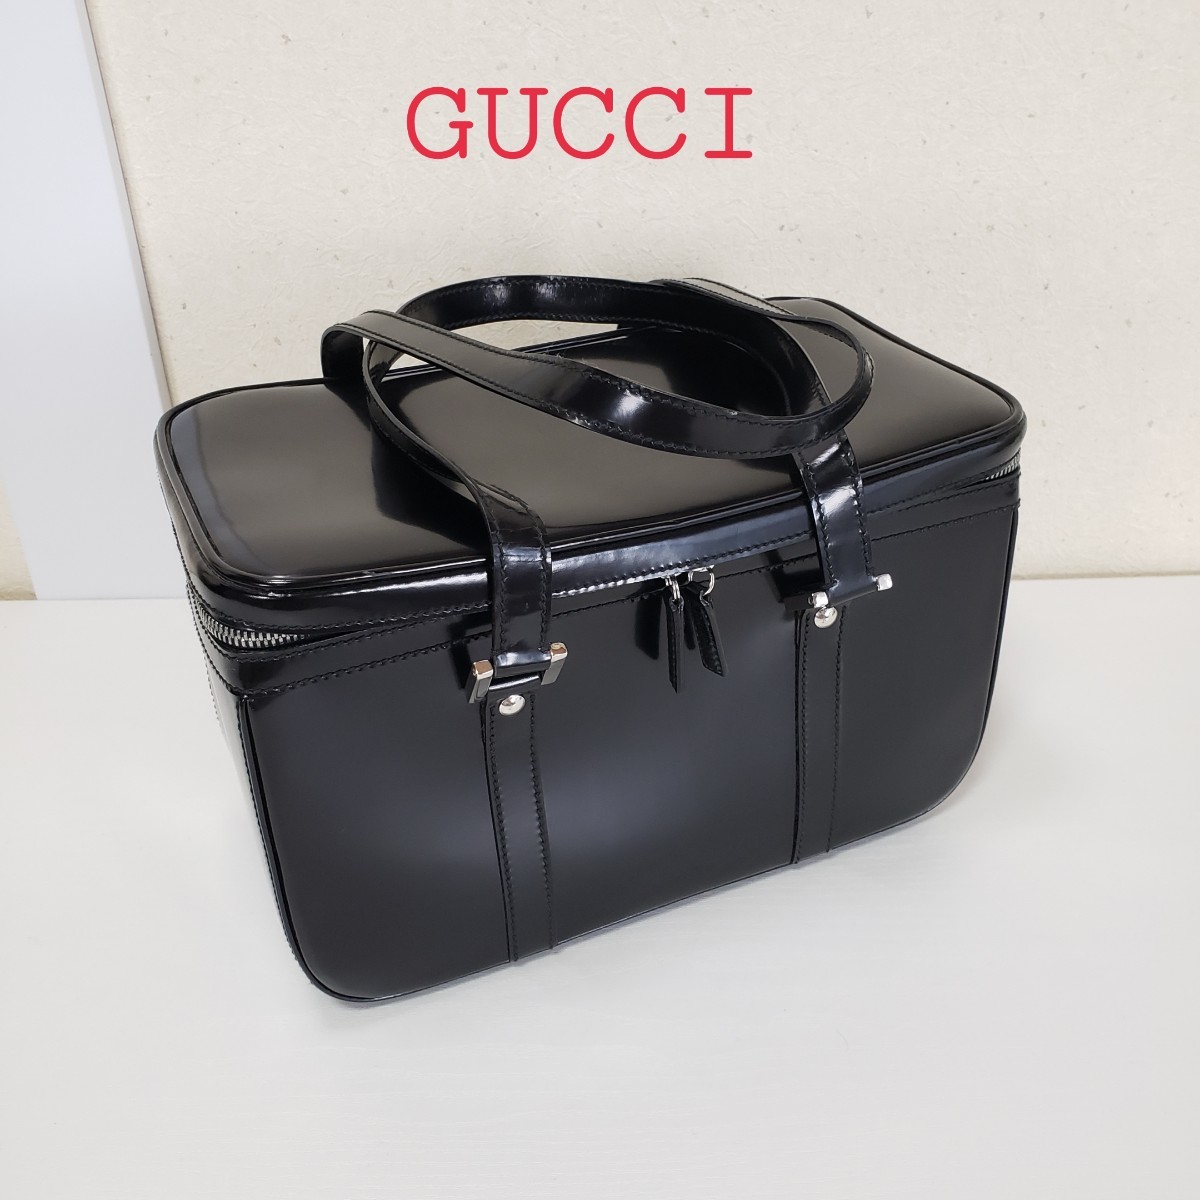 正規品◆GUCCI グッチ レザー メイクボックス メイクアップ コスメケース ヘアメーク バッグ バニティ イタリア製 黒 ブラック